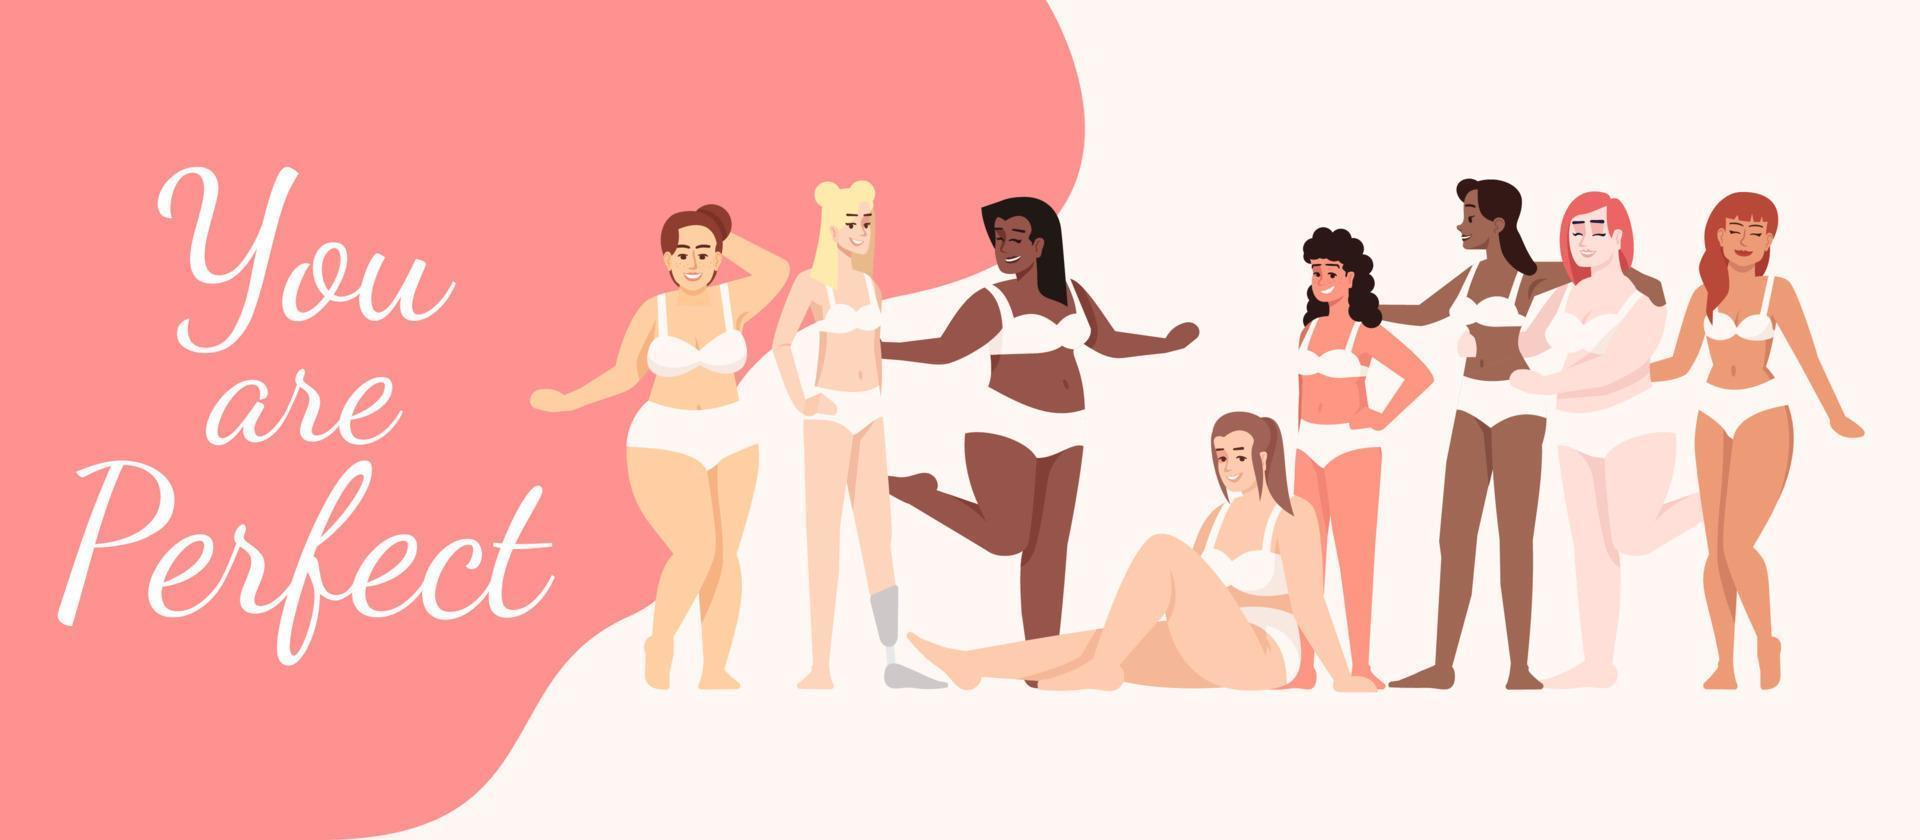 du är perfekt platt affisch vektor mall. kvinnor klädda i underkläder isolerade seriefigurer på vitt och rosa. kroppspositiv. banner, broschyrsida, broschyrdesignlayout med plats för text